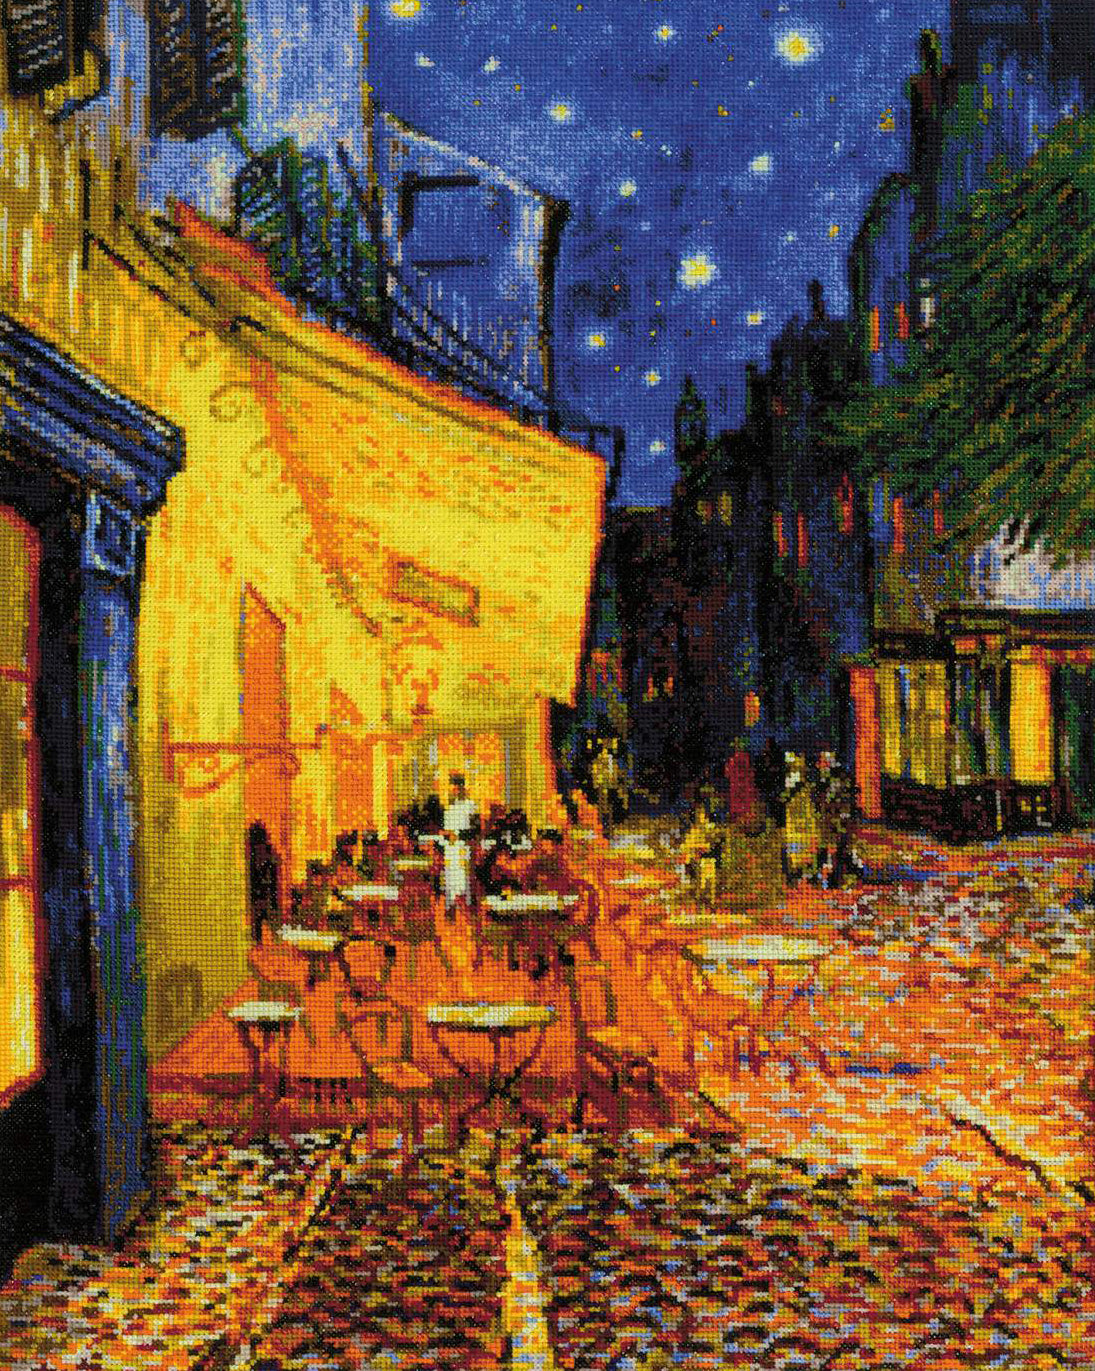 Kit de Punto de Cruz - "Terraza de Café por la Noche basado en la Pintura de V. Van Gogh" - Riolis 2217